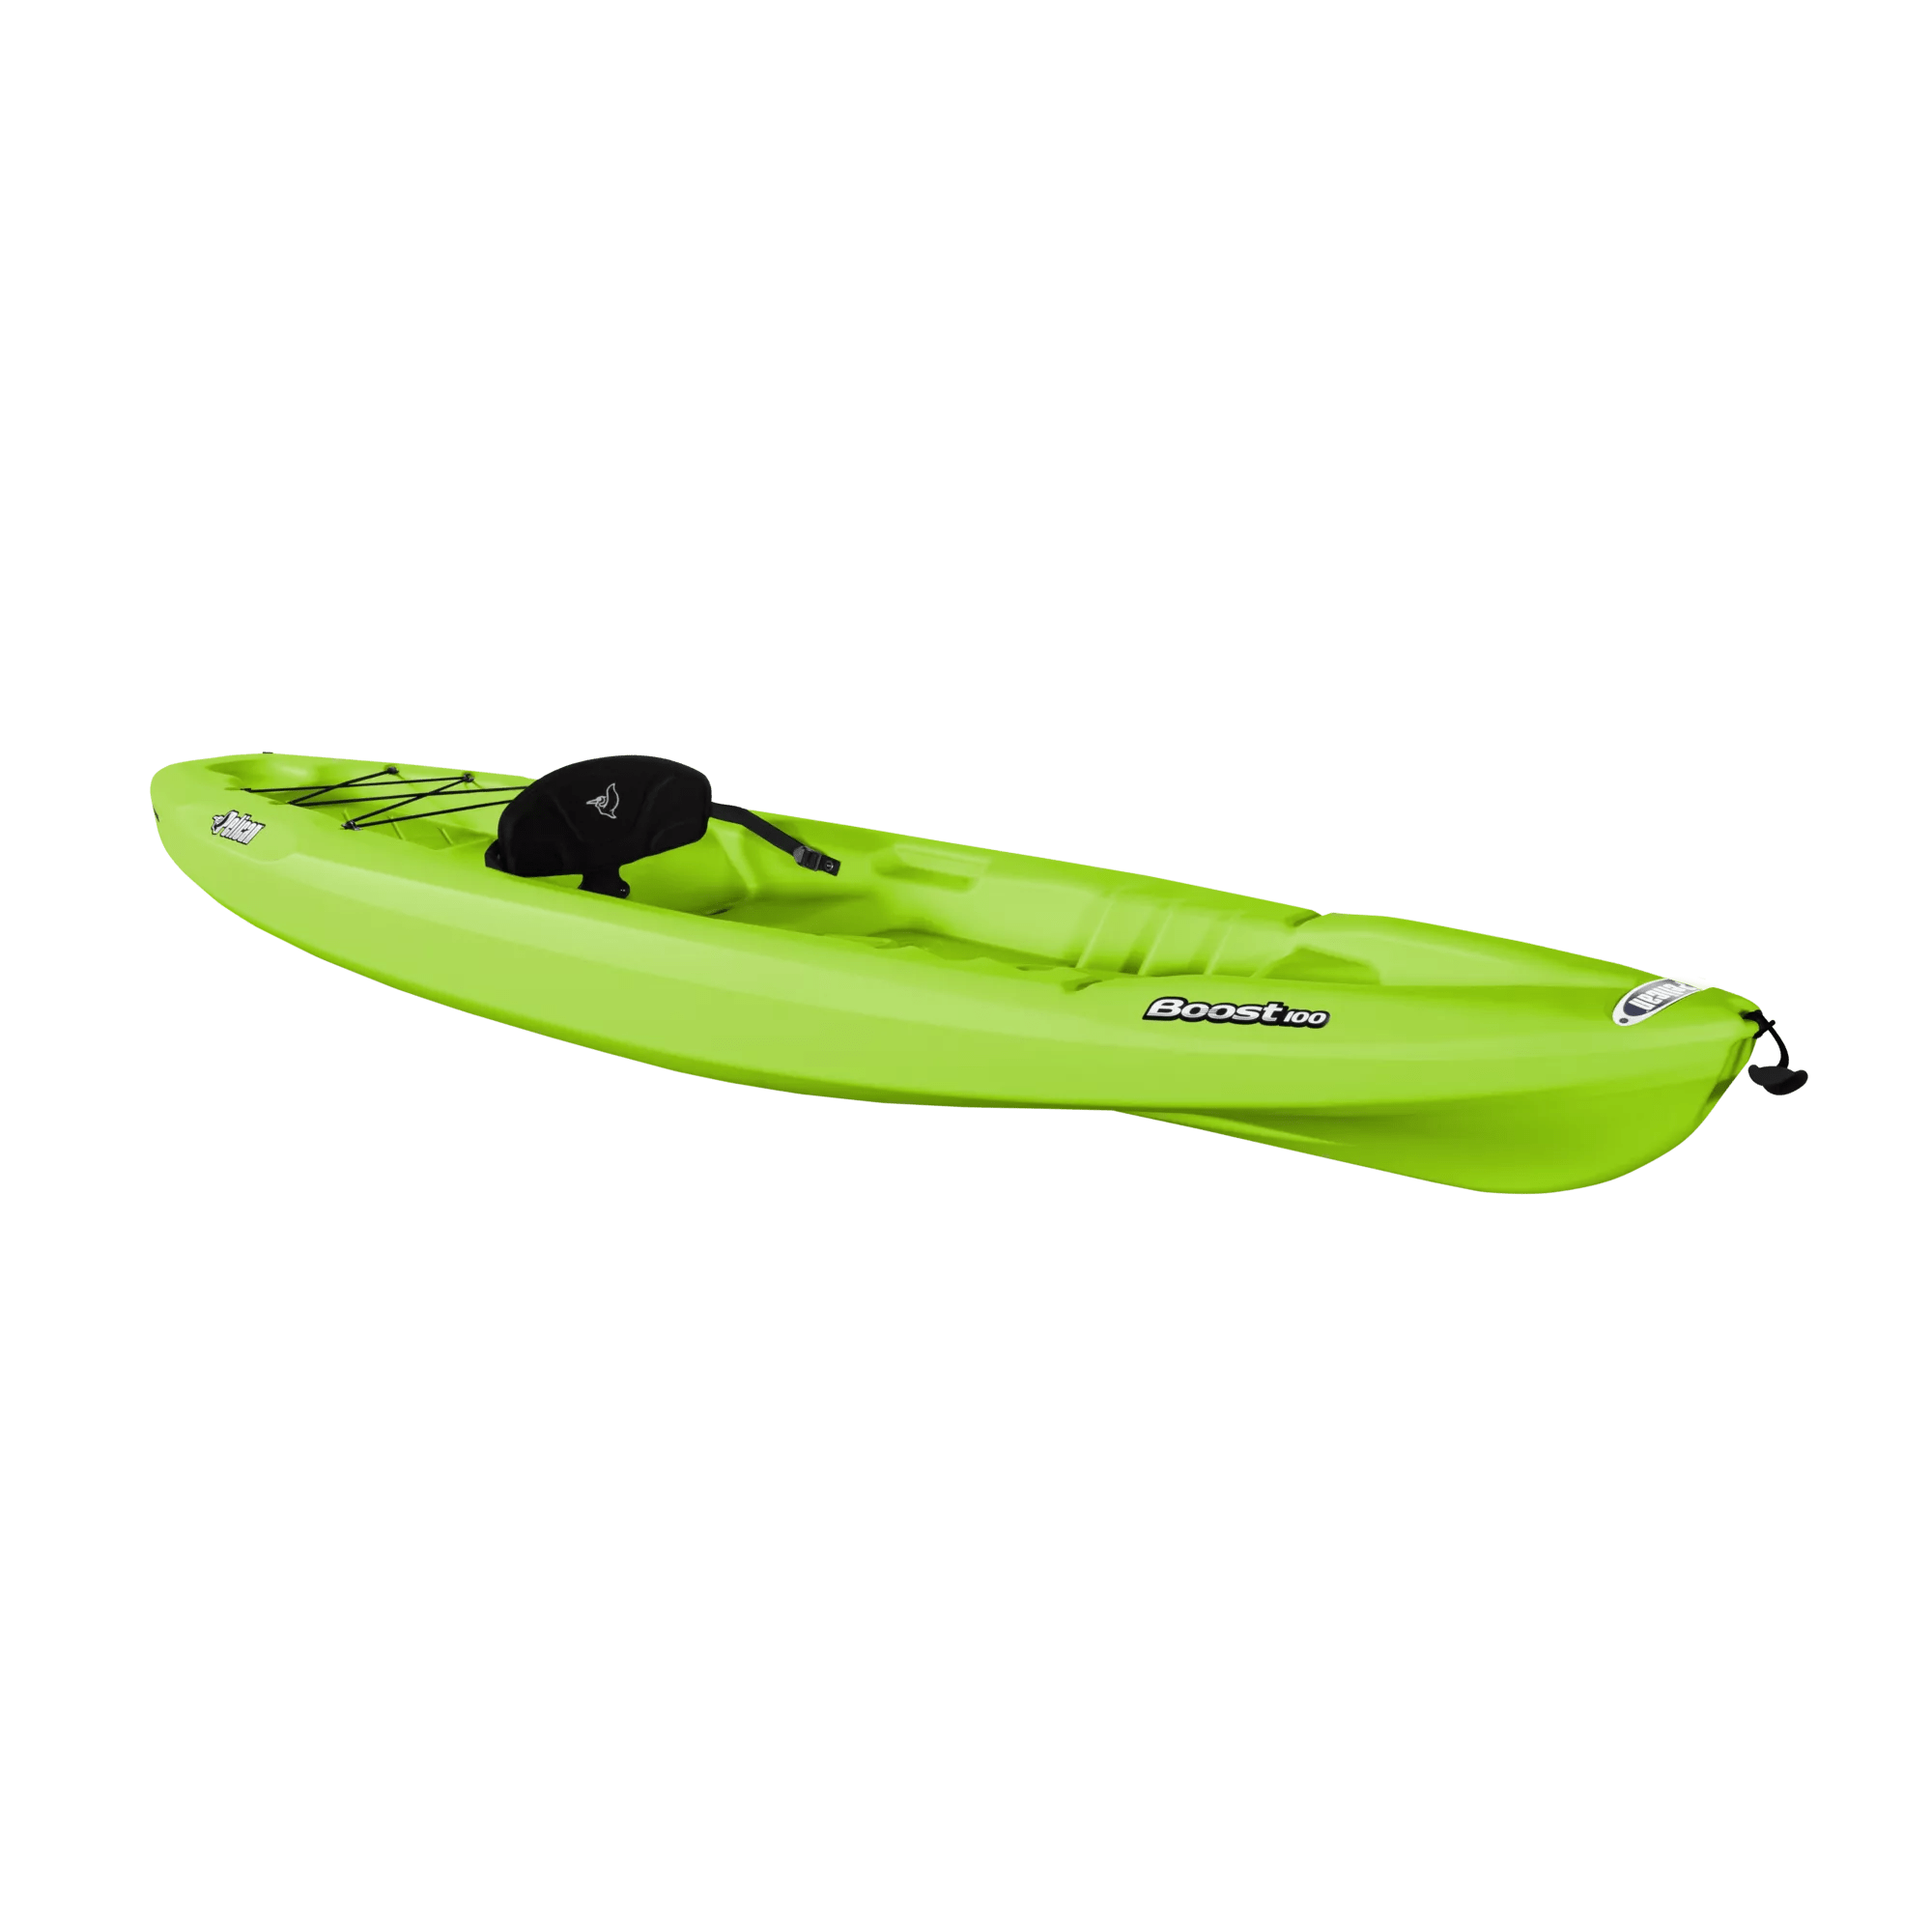 PELICAN - Boost 100 Recreational Kayak - Lime - KOS10P105 - ISO 